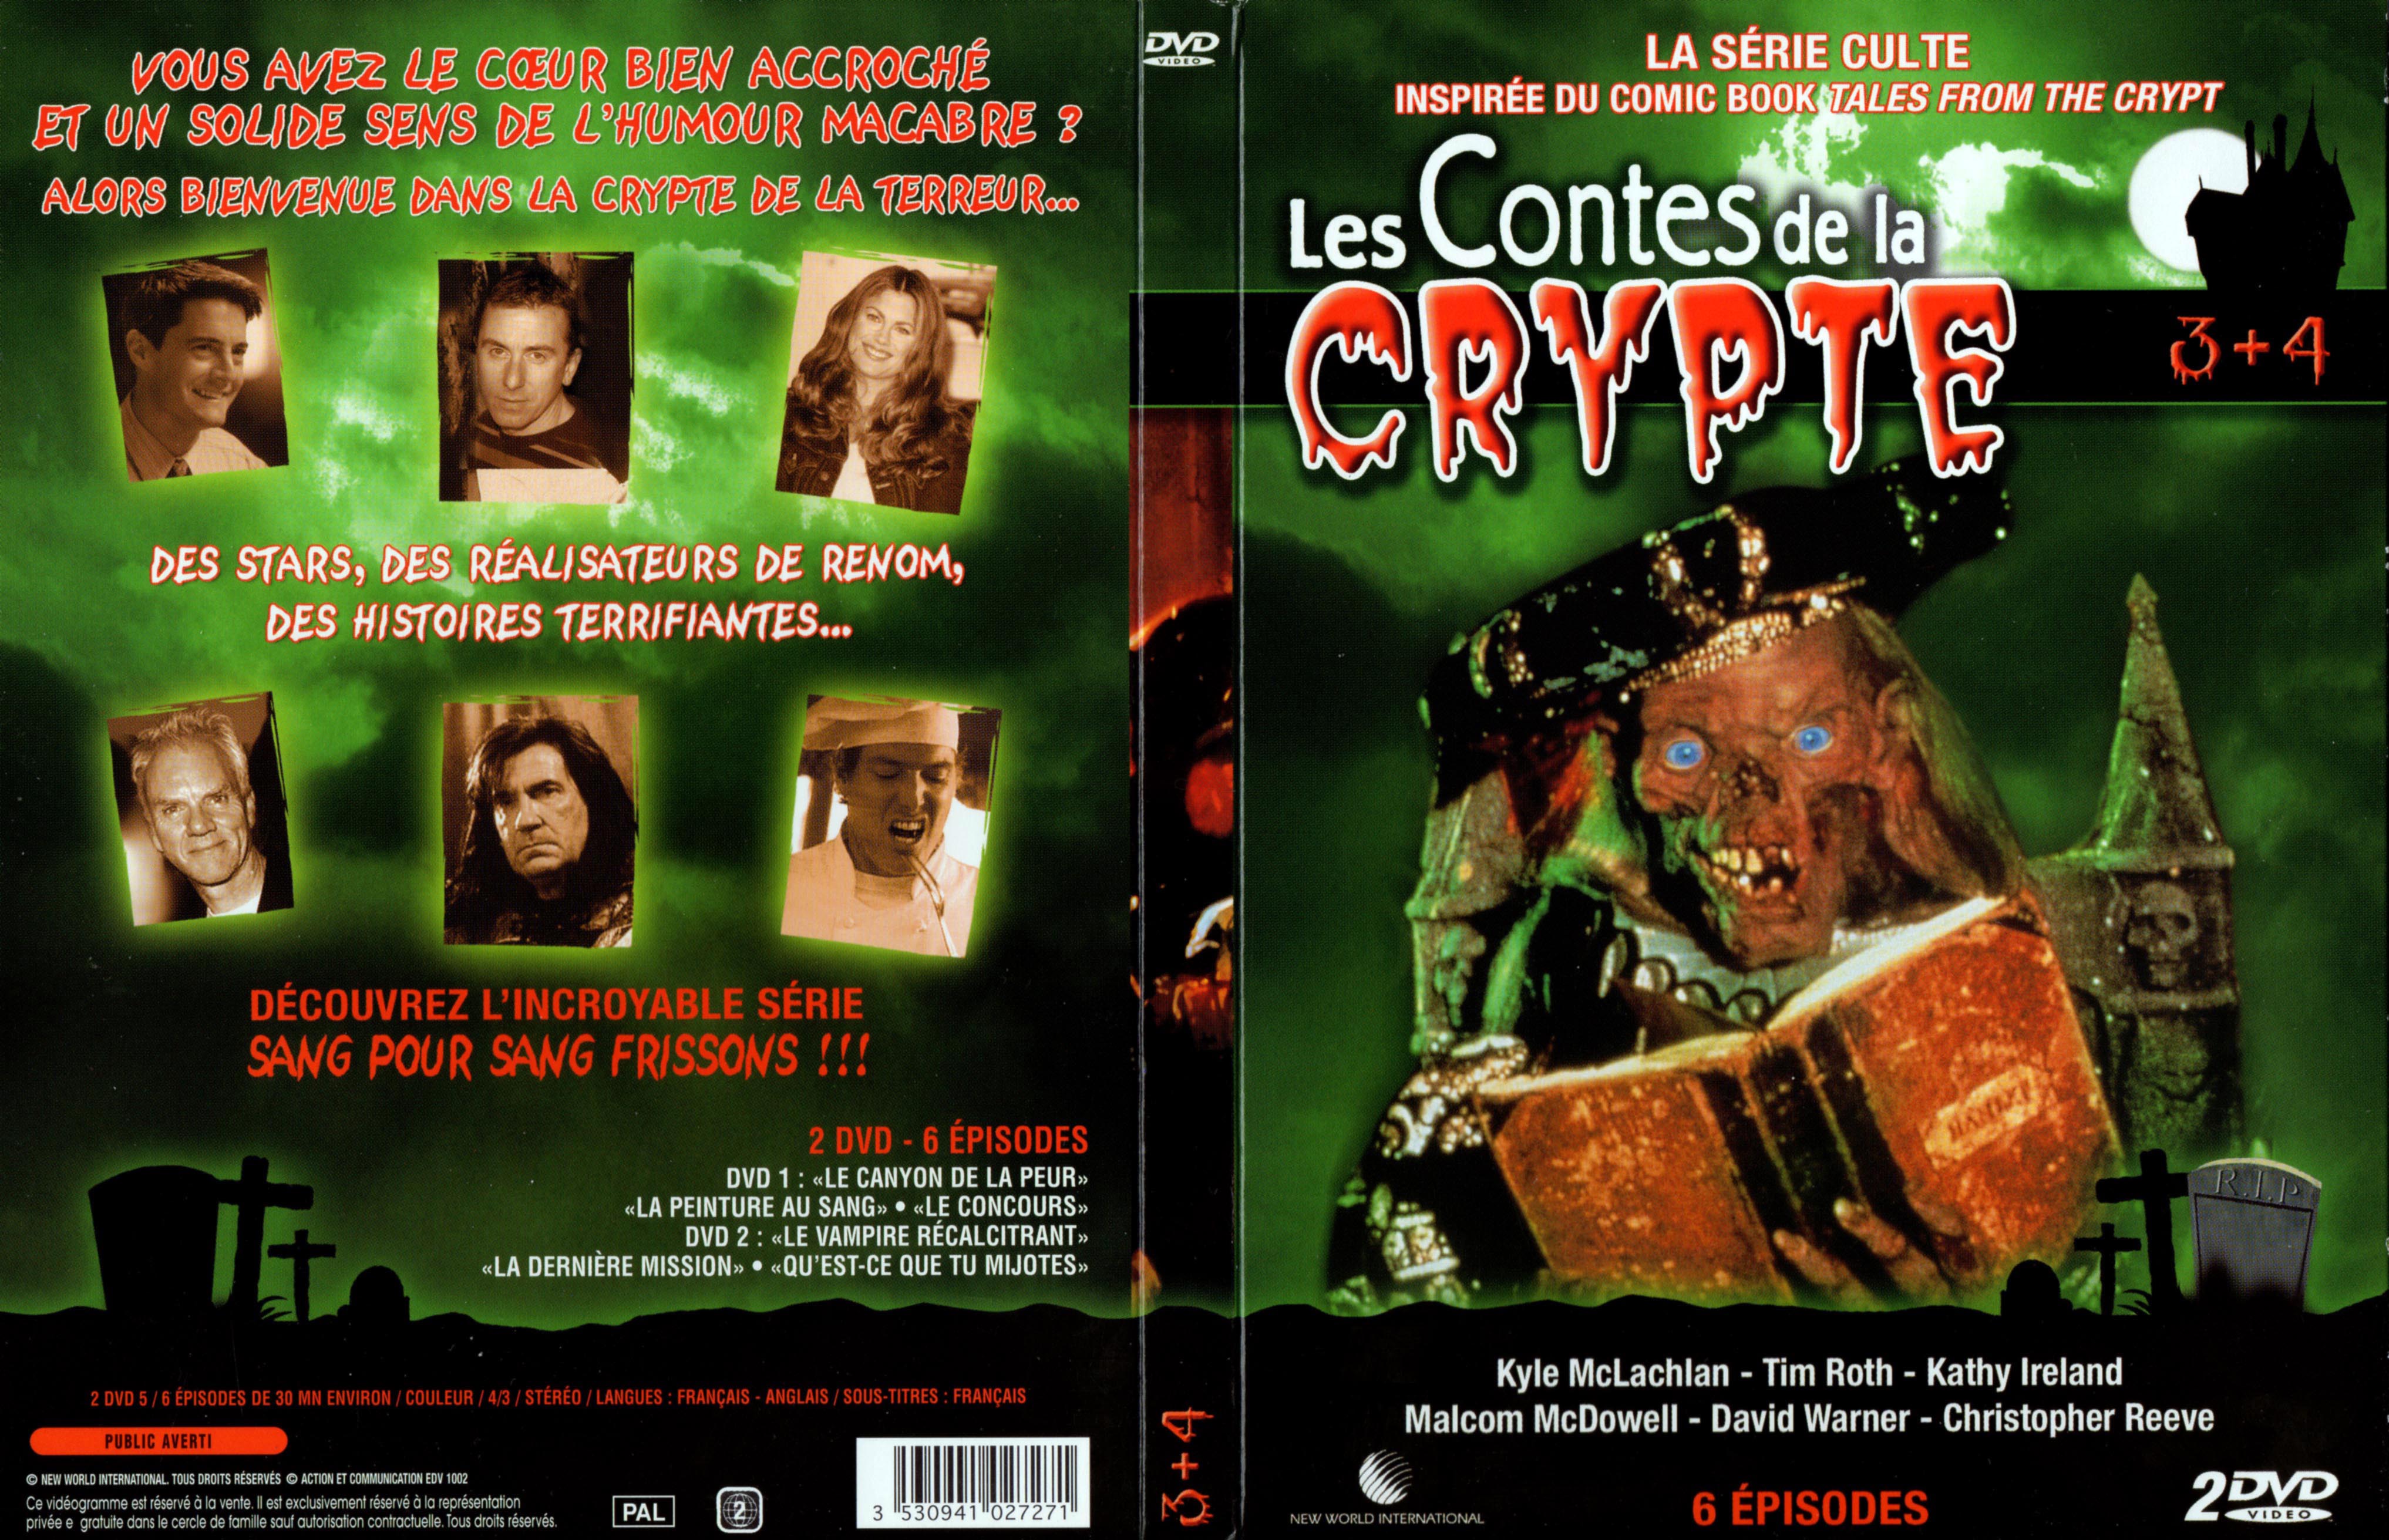 Jaquette DVD Les contes de la crypte Vol 3 et 4